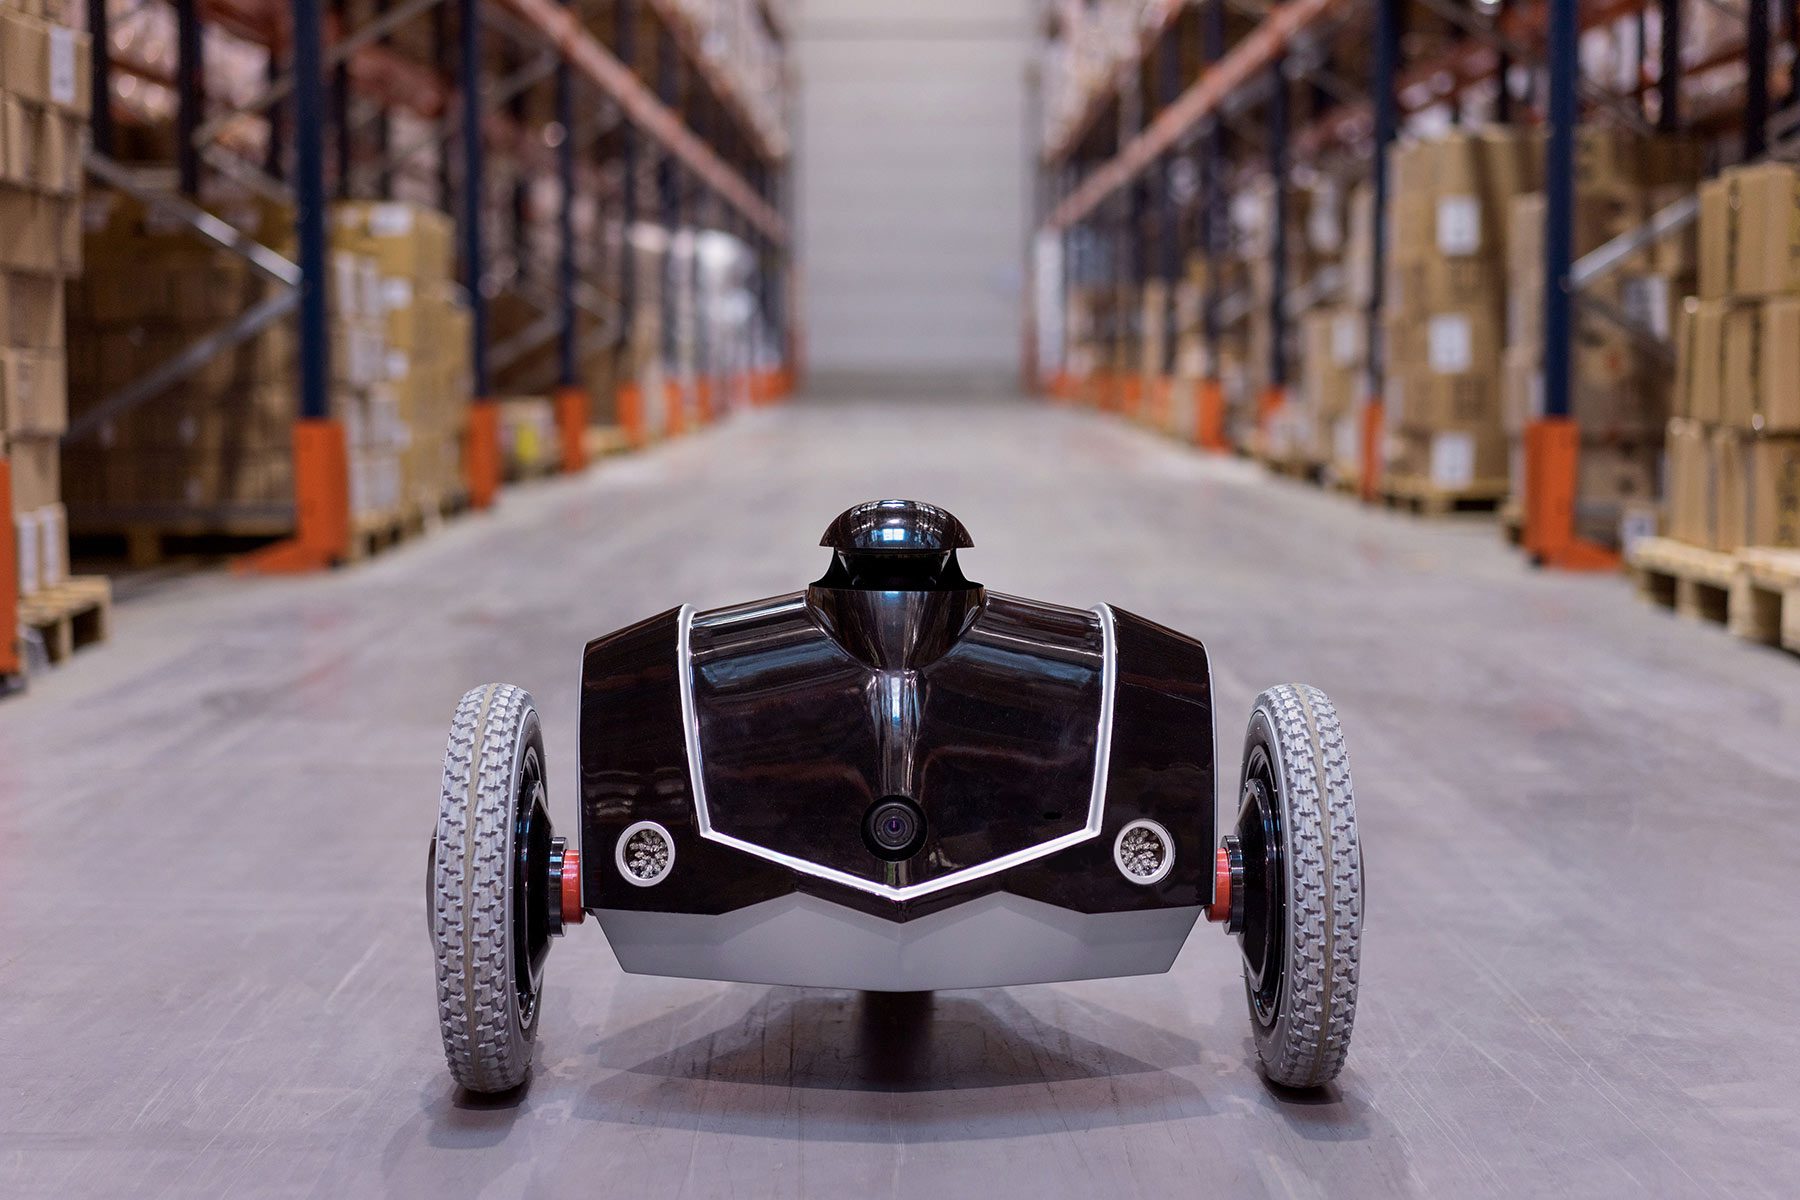 le drone roulant e-Vigilente d'EOS Innovation est le premier
rondier robotique au monde. la prise de participation de Parrot
(1 million d'euros en 2014) n'aura pas suffi à pérenniser le fabricant.
© EOS Innovation